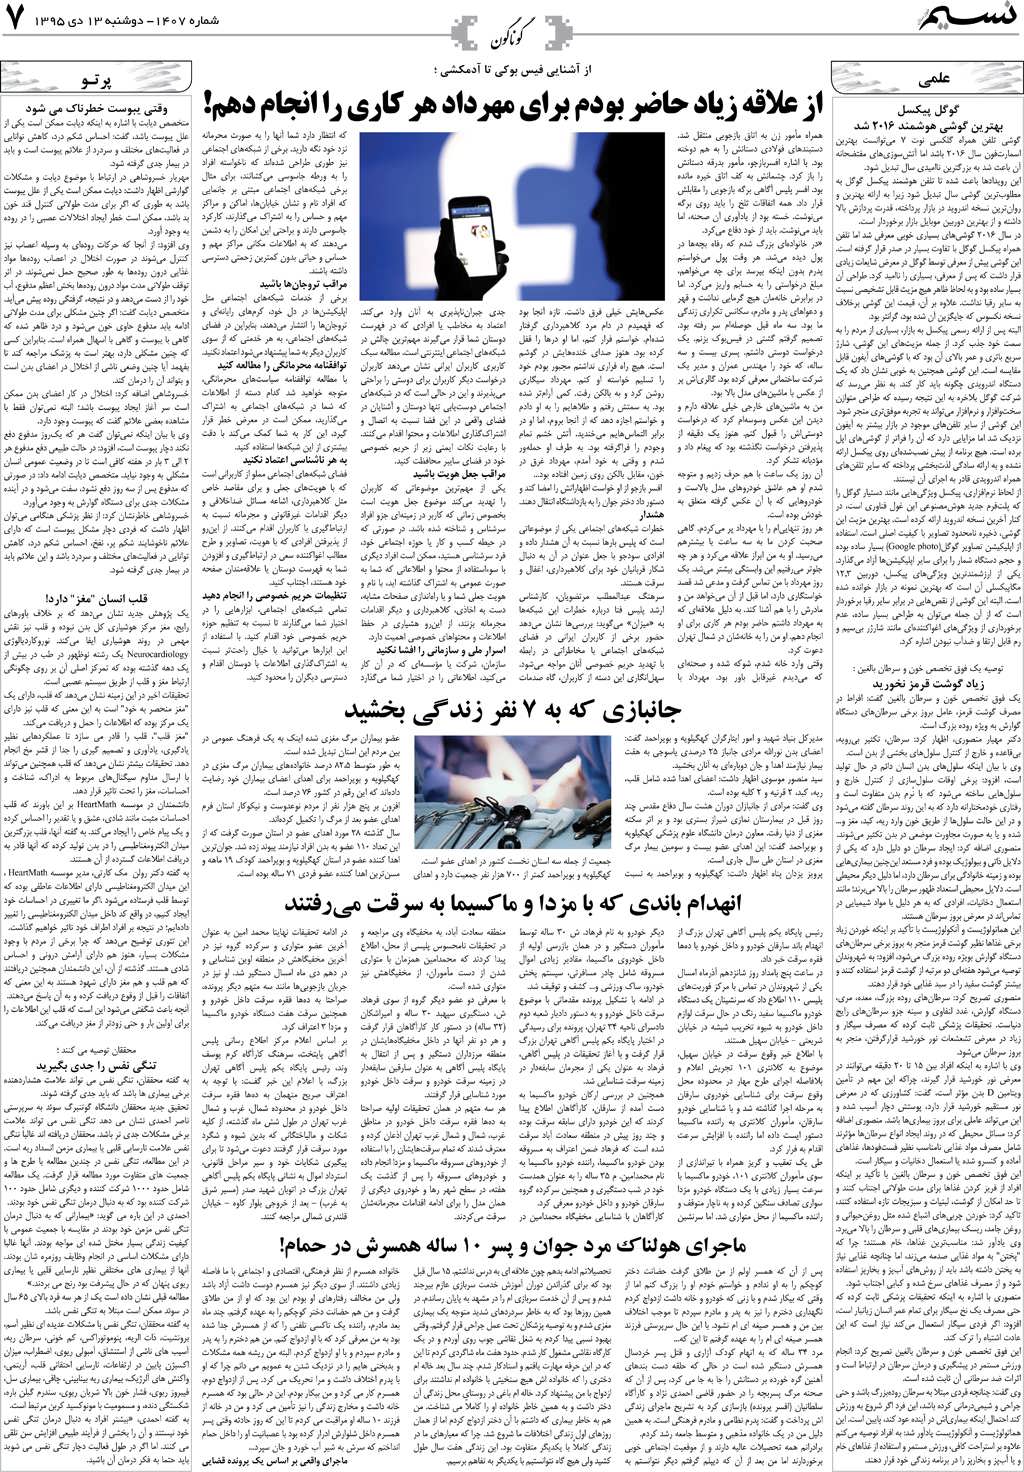 صفحه گوناگون روزنامه نسیم شماره 1407